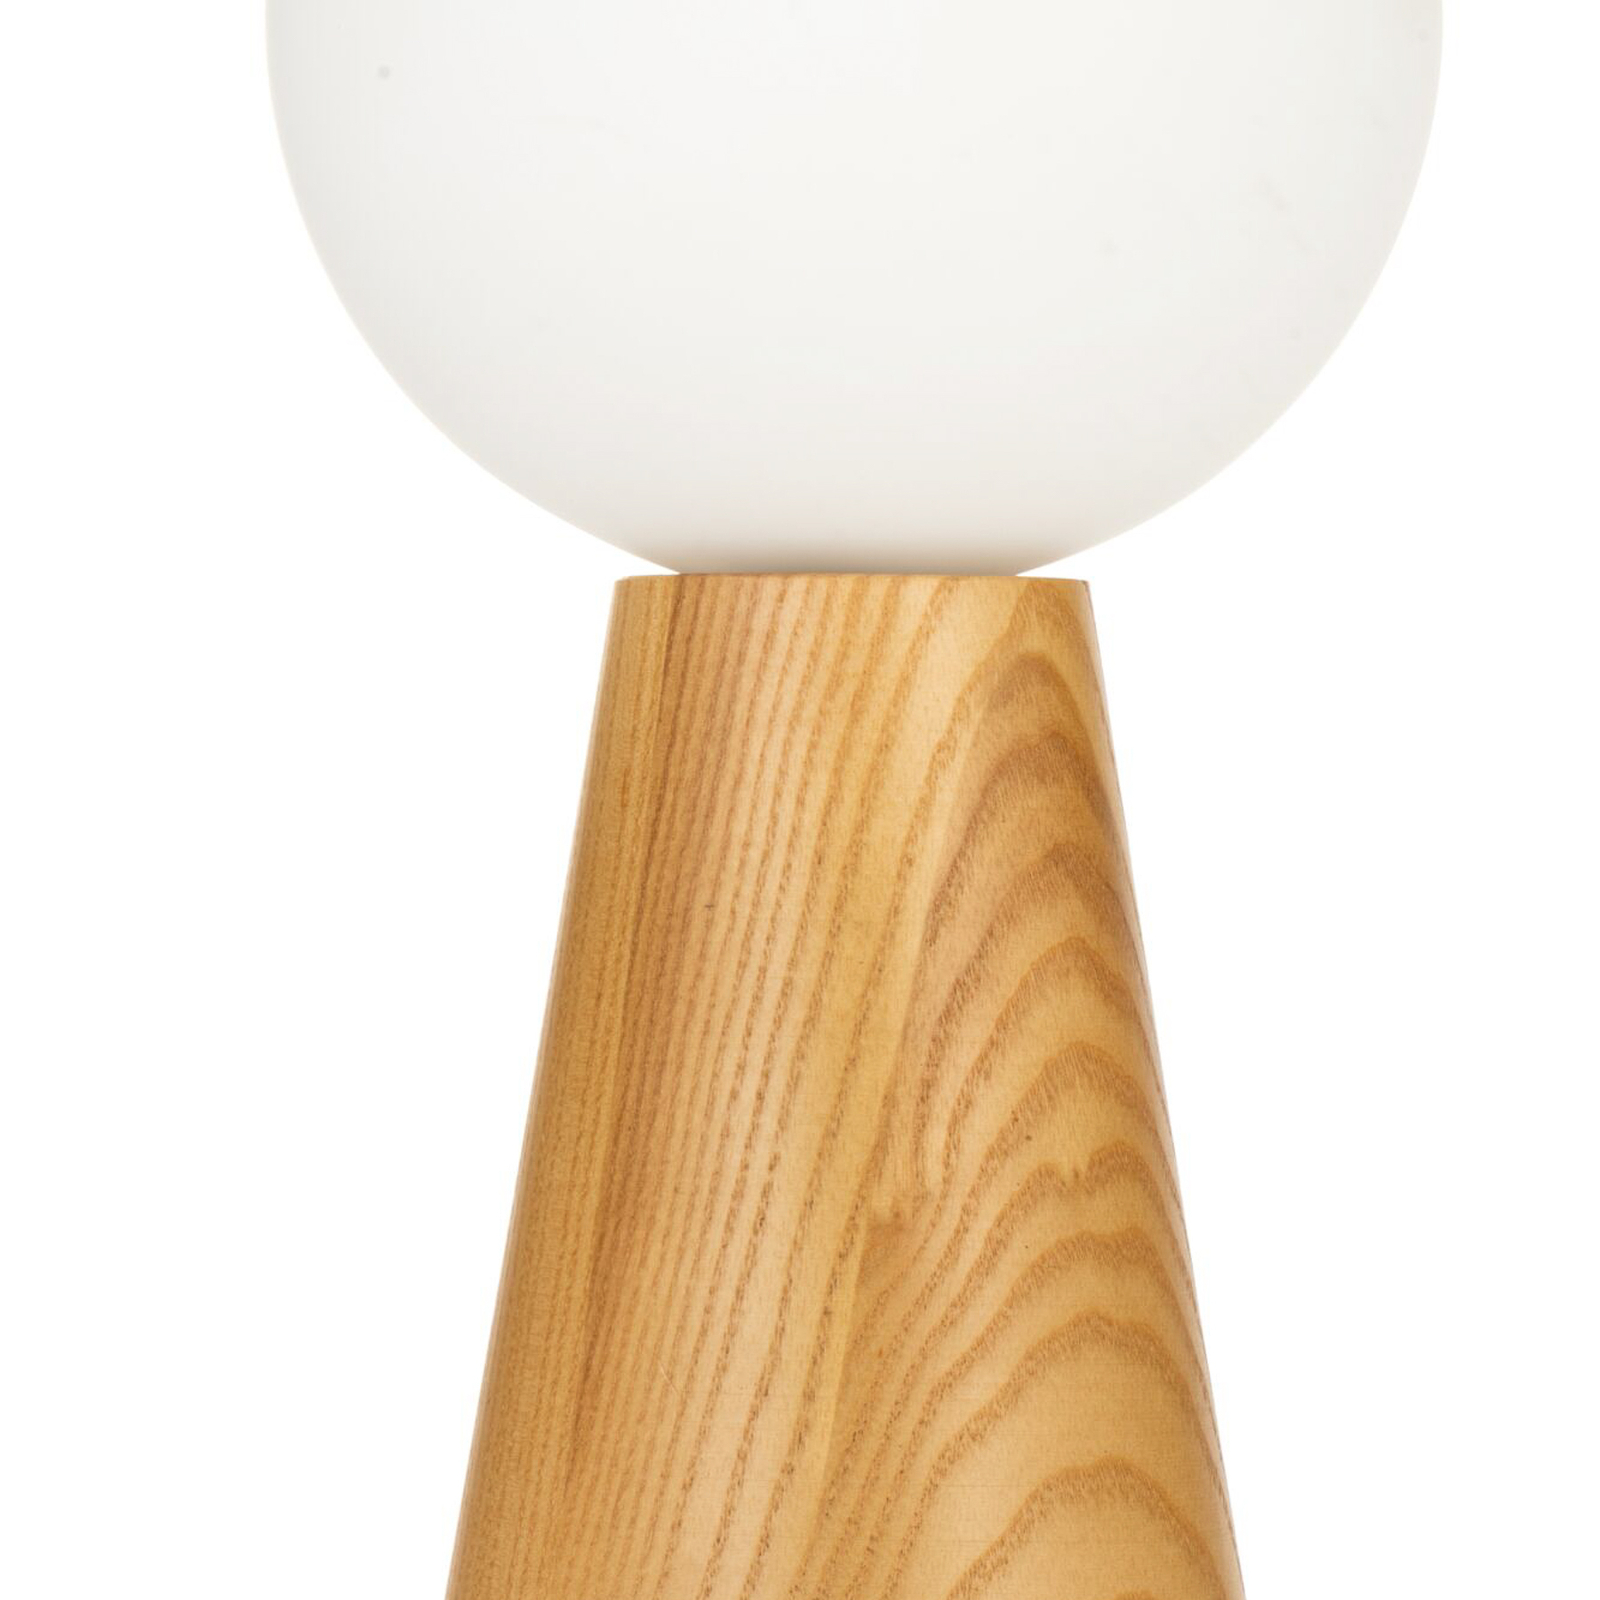 Pauleen Woody Soul masă, picior lemn, sferă sticlă